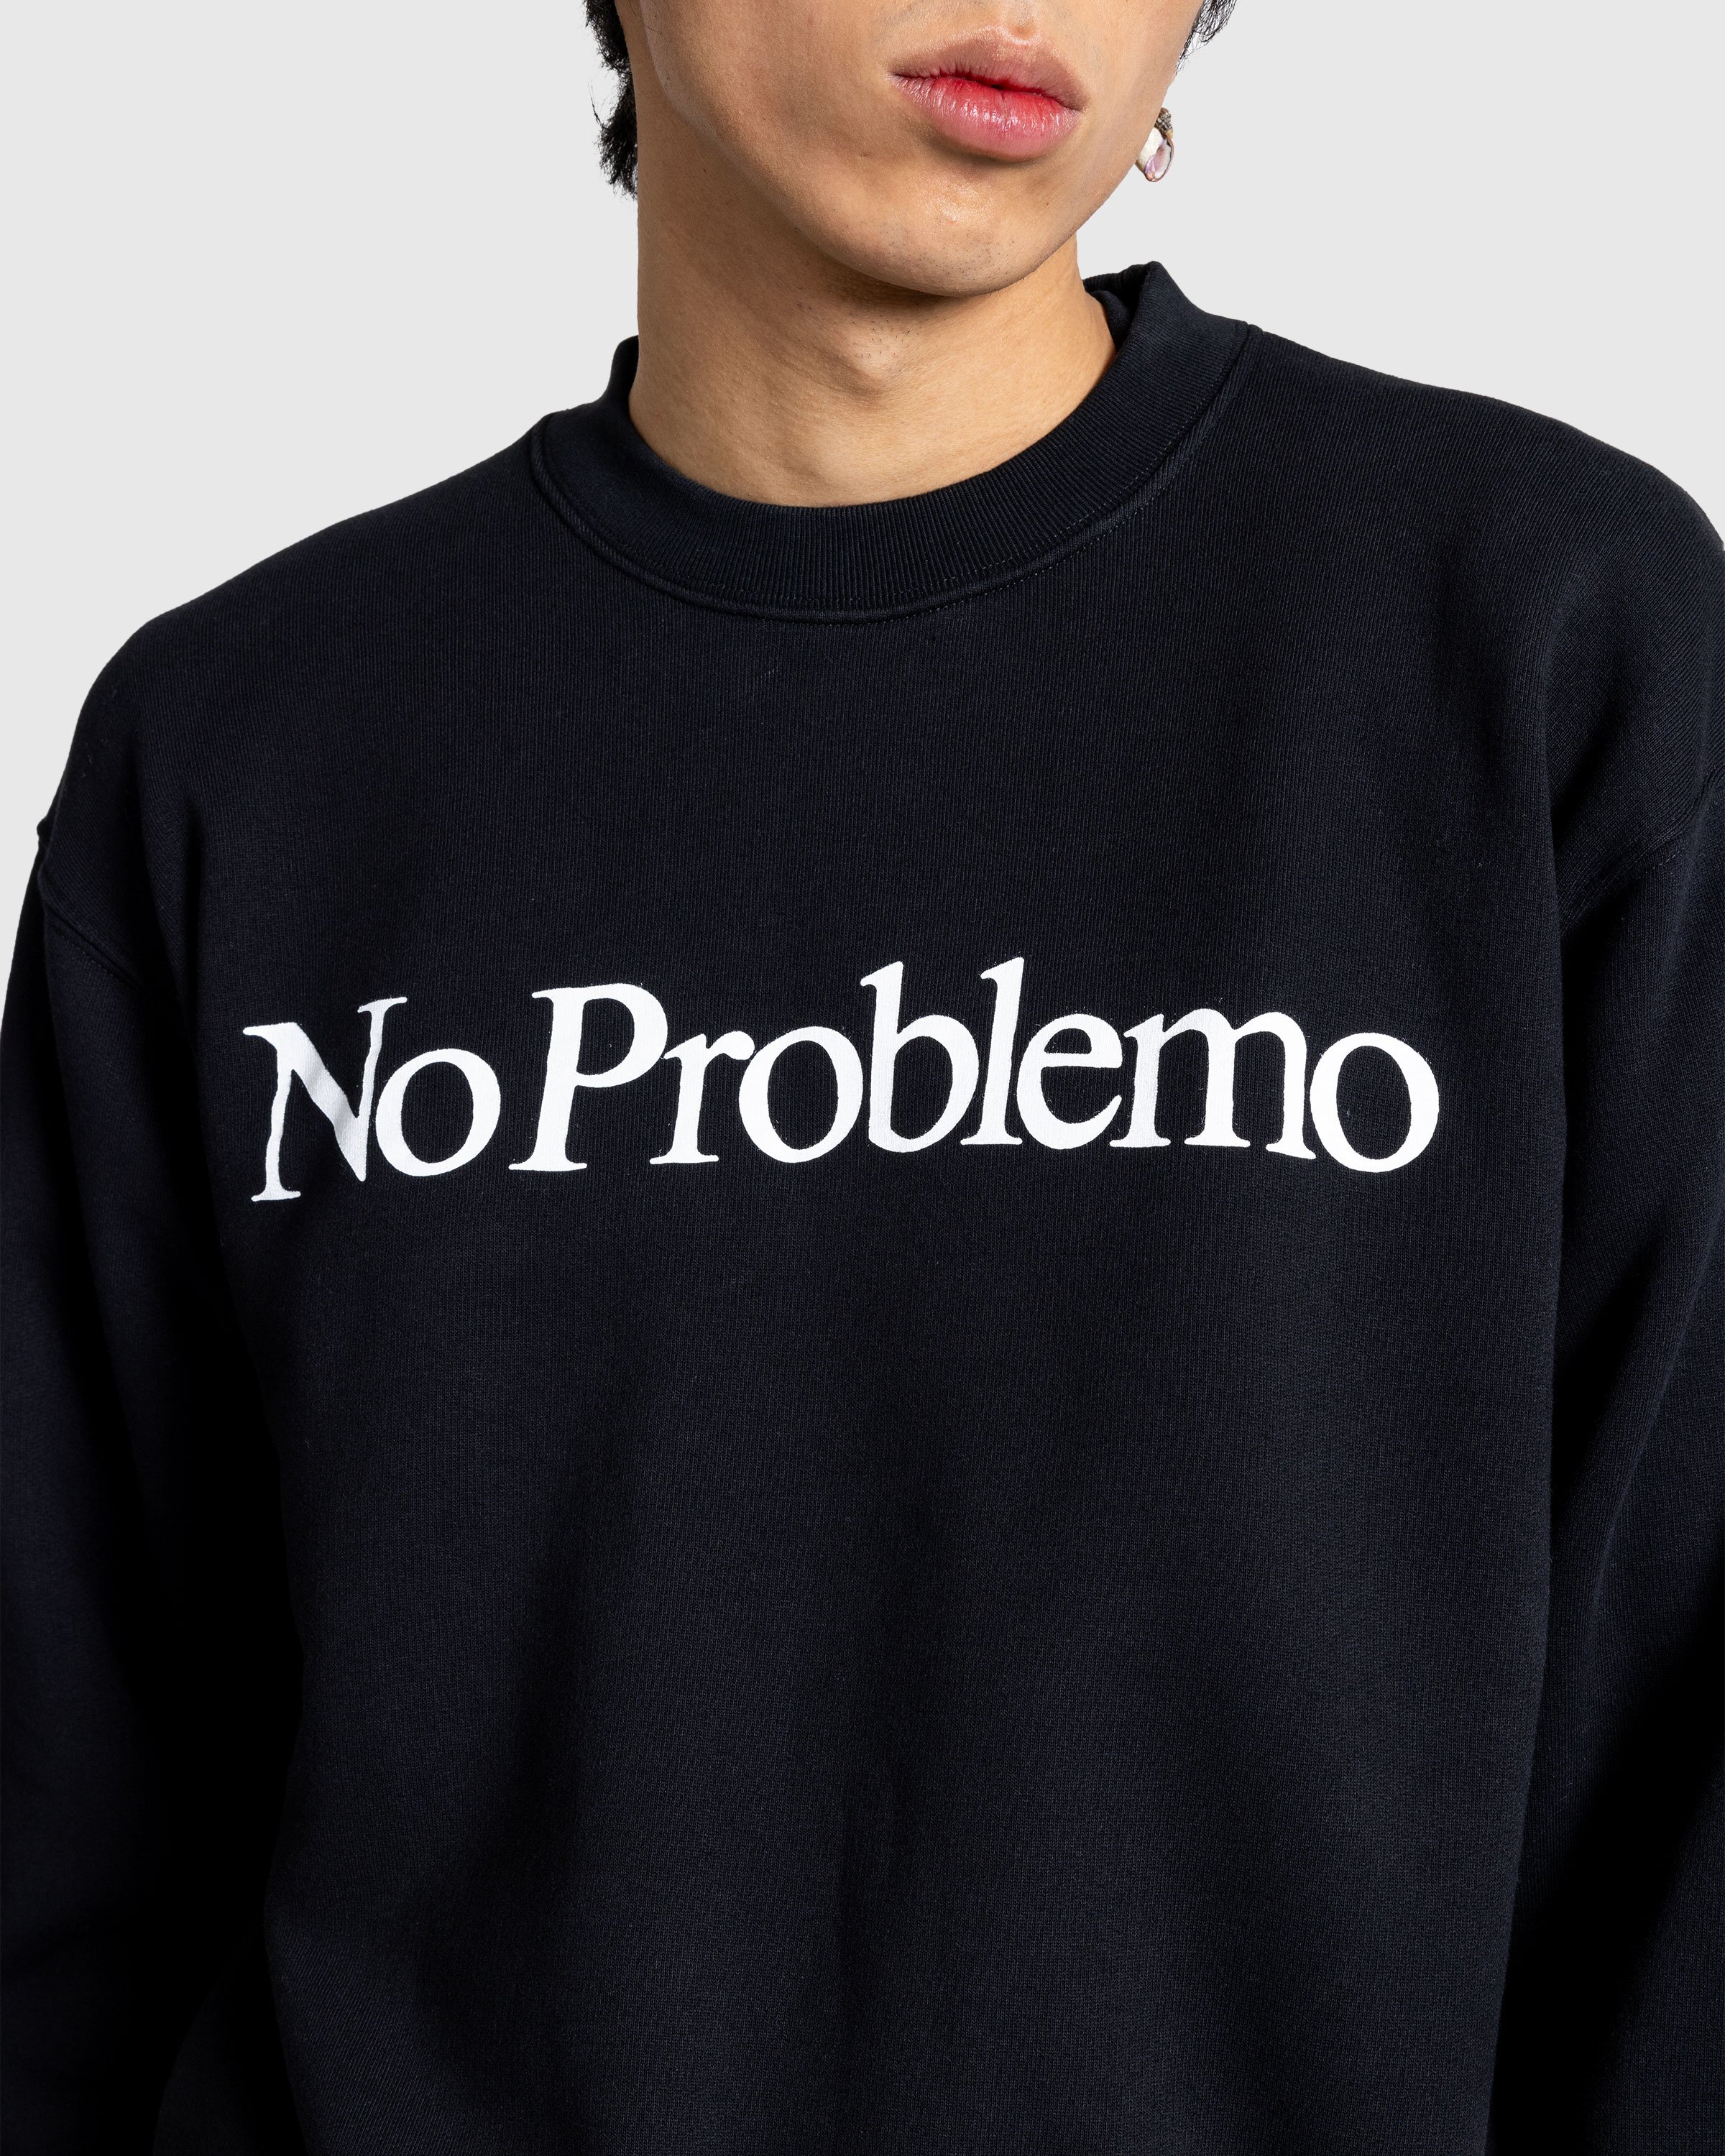 Aries - No Problemo Sweatshirt Black - Clothing - Black - Image 5